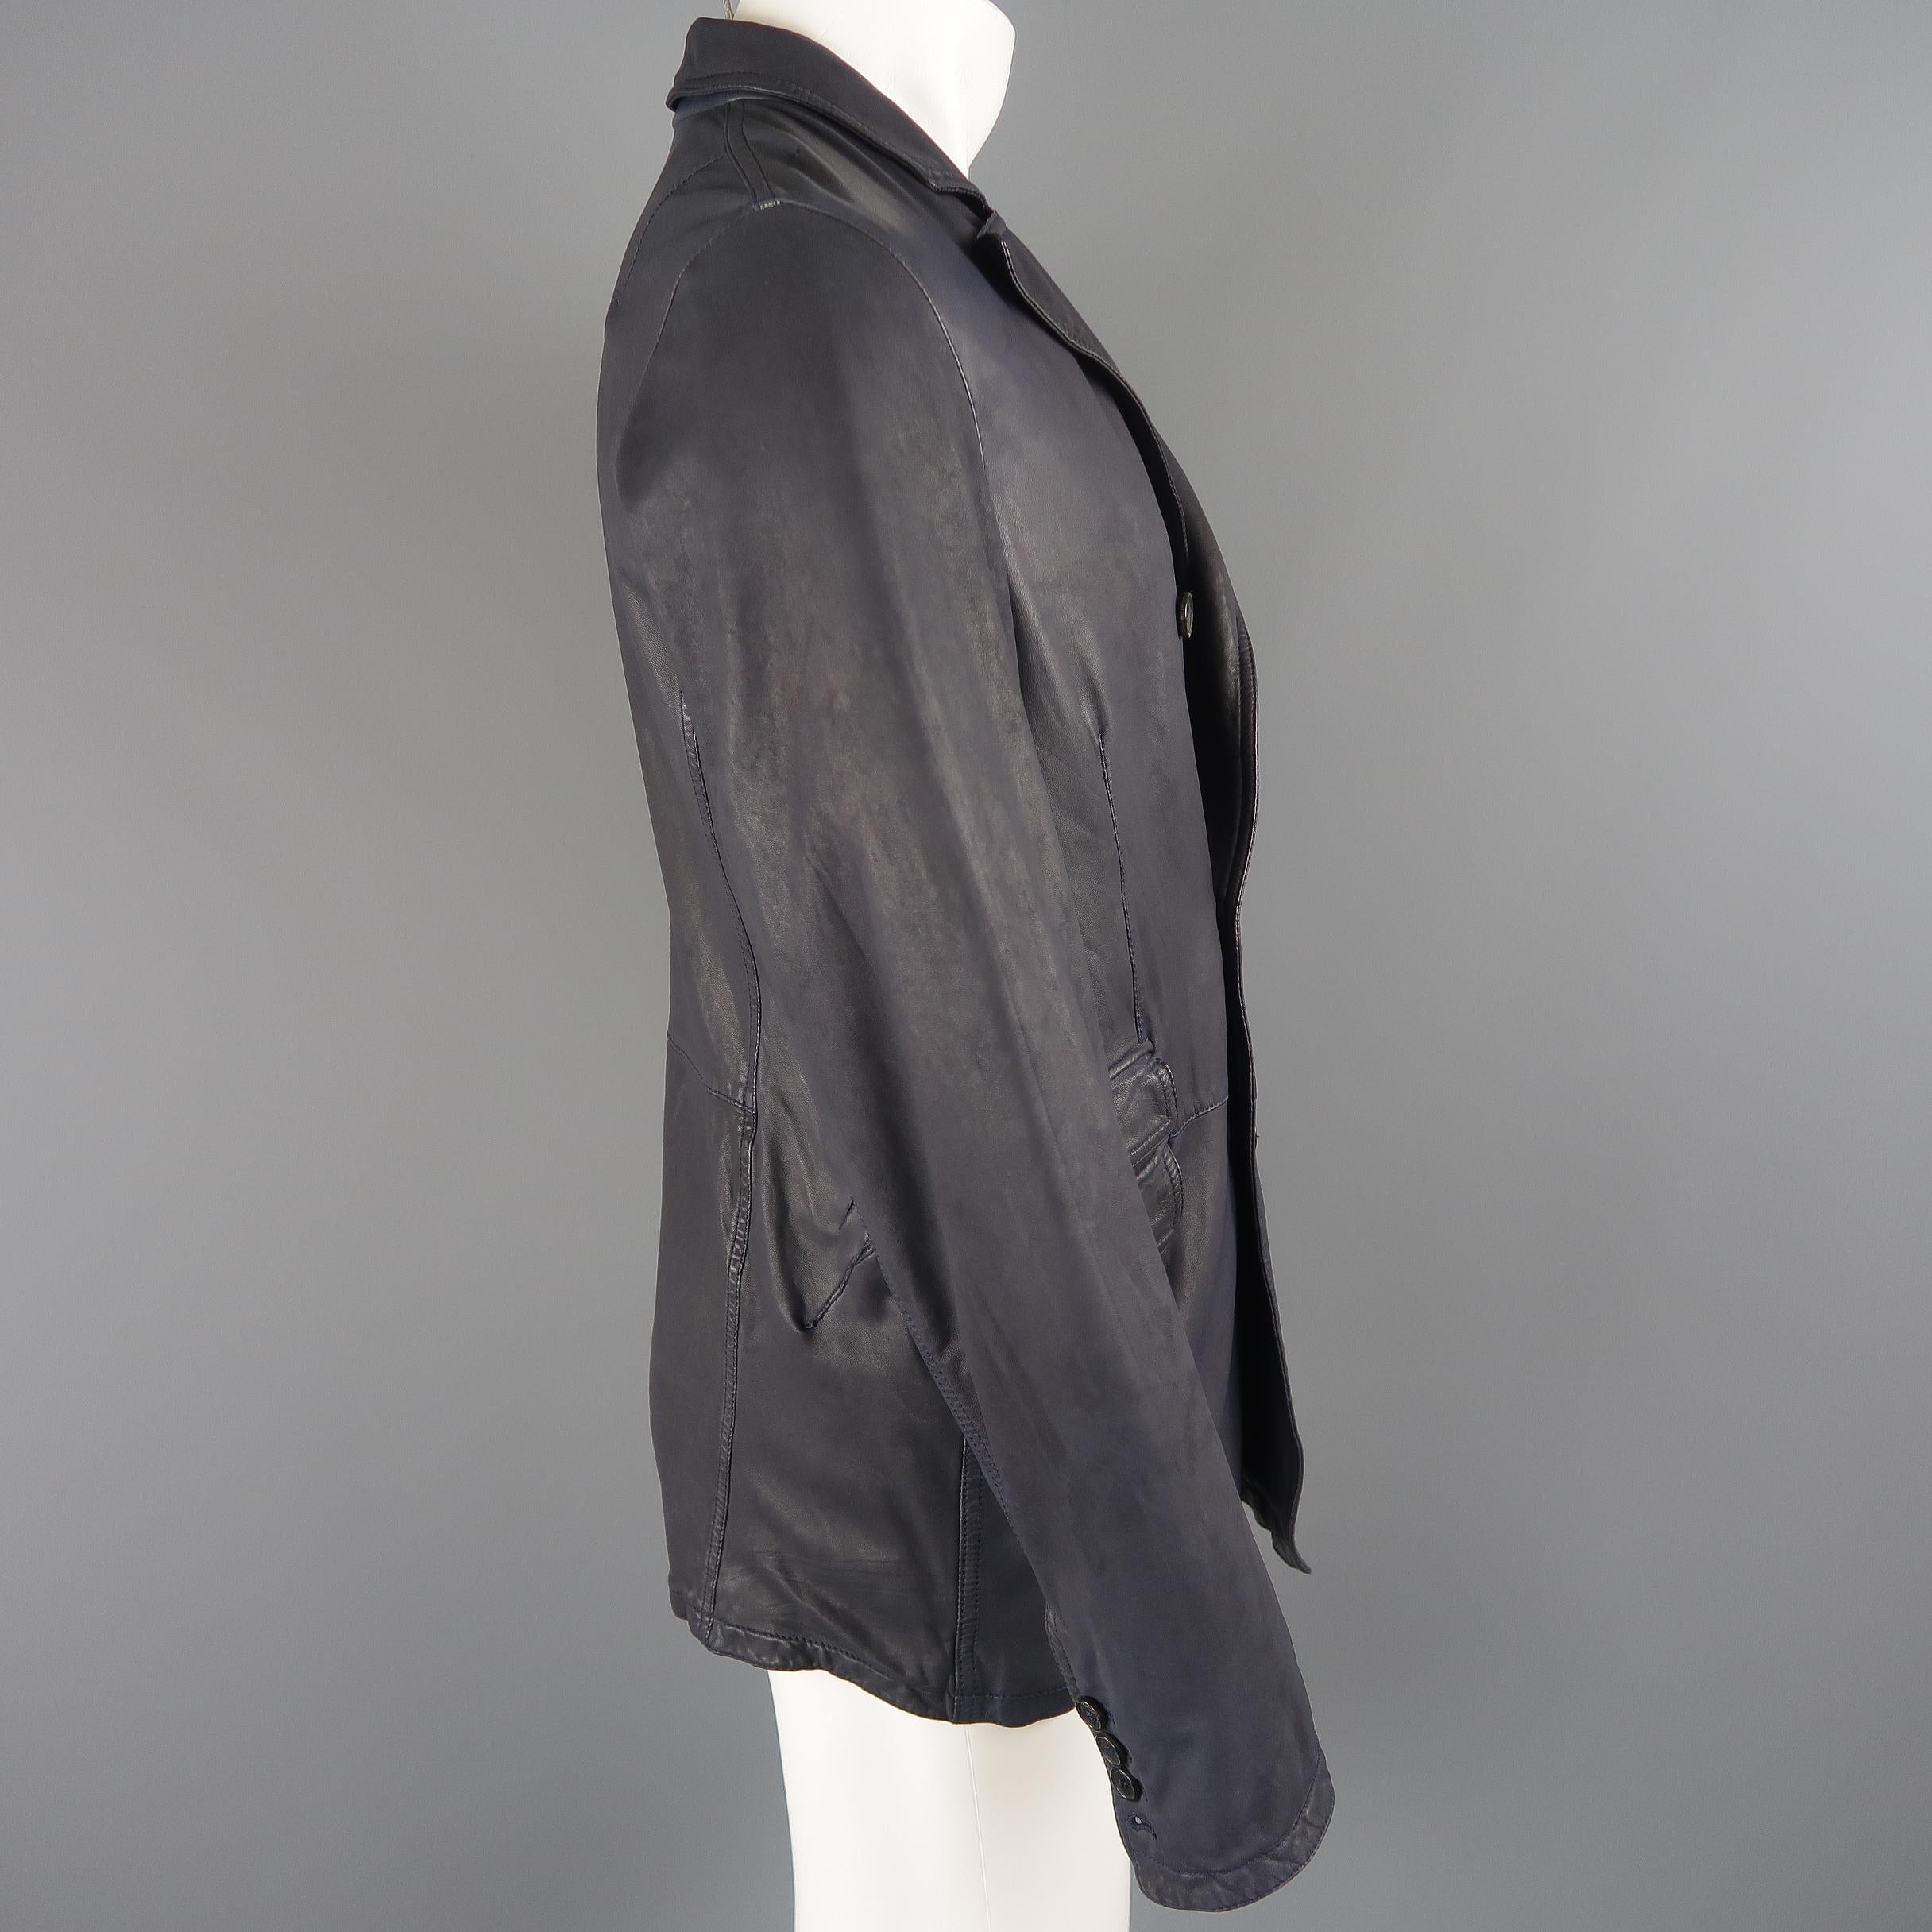 Men's NEIL BARRETT Jacket M Navy Leather Double Breasted Sport Coat Jacket